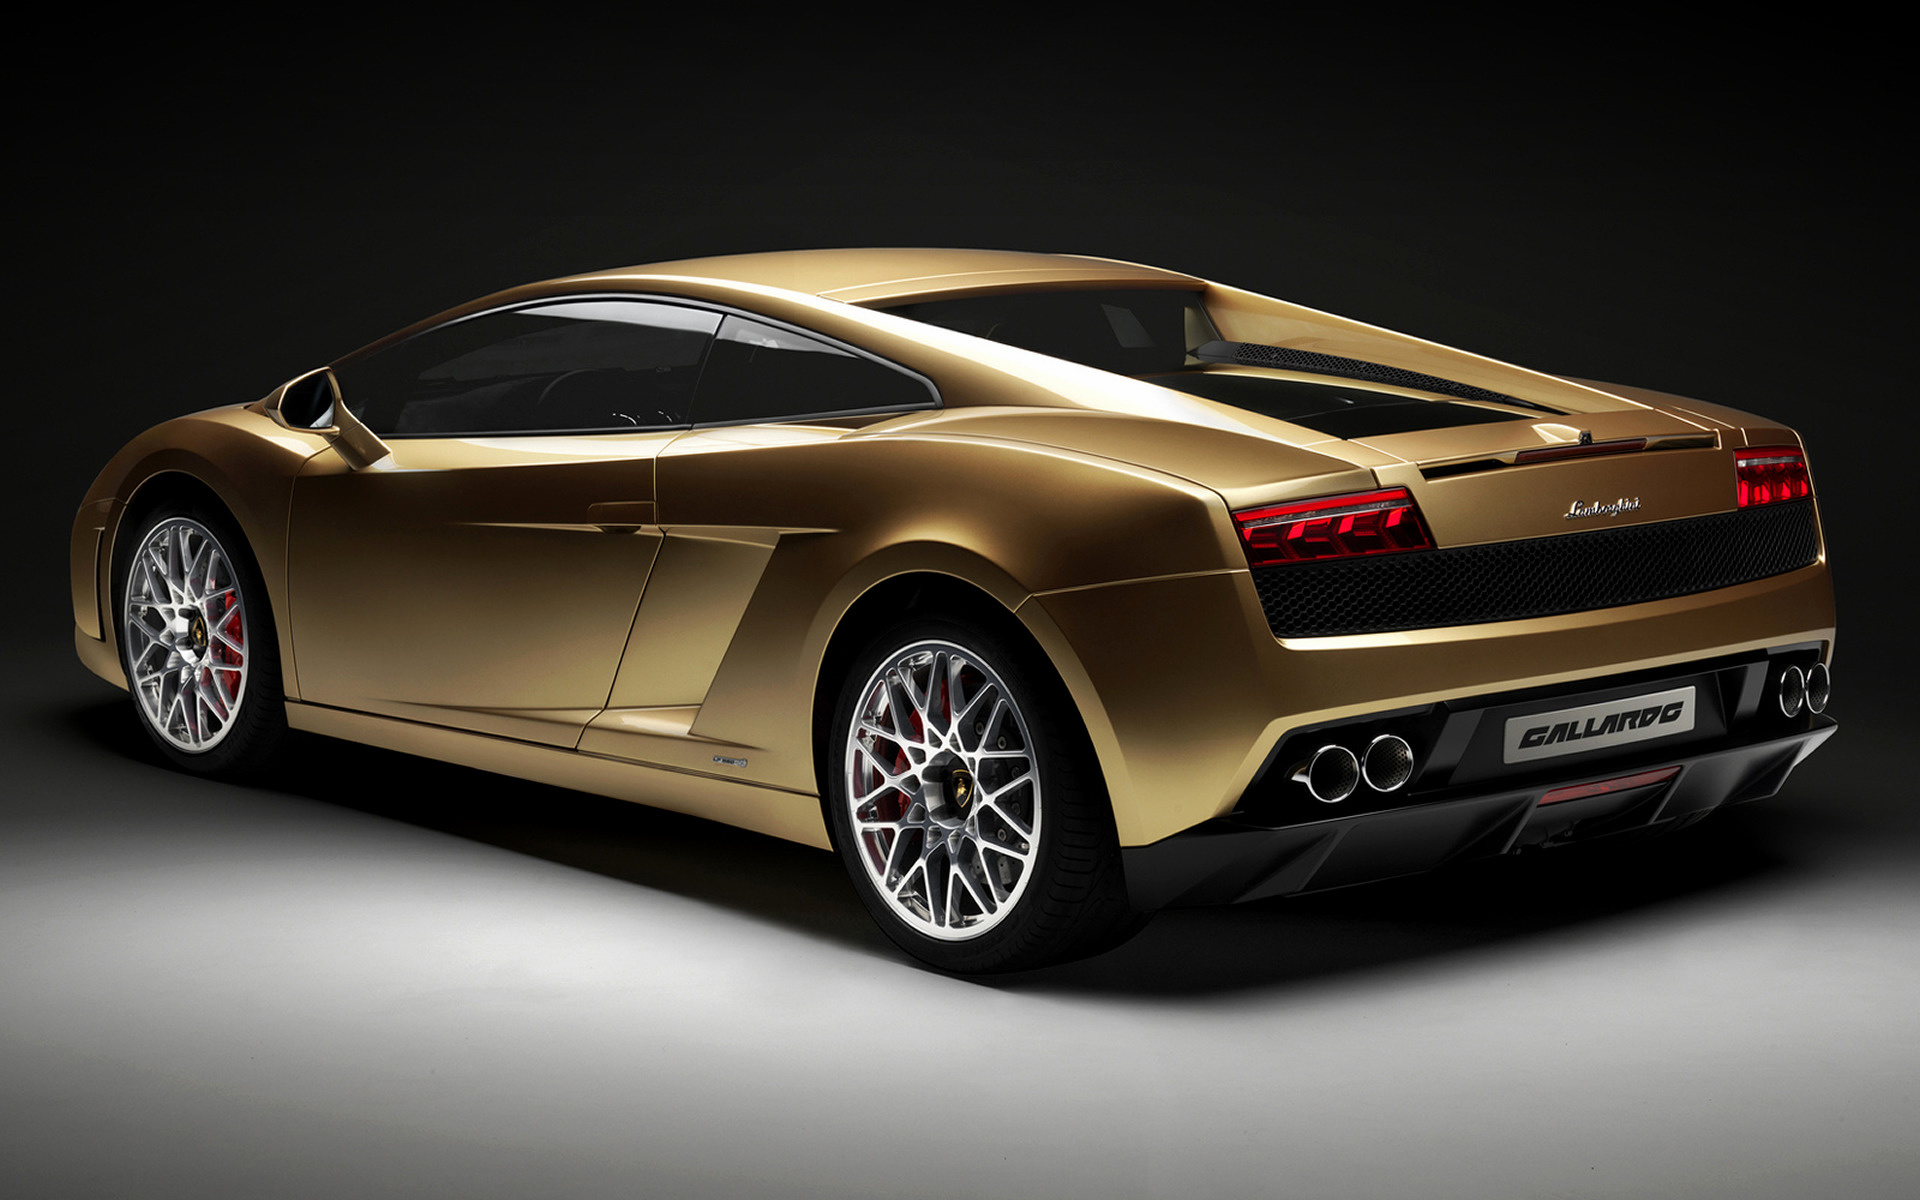 Gt4 gold. Lamborghini lp560-4. Ламборджини Галлардо. Ламборджини Галлардо lp560-4. Lamborghini Gallardo Gold.